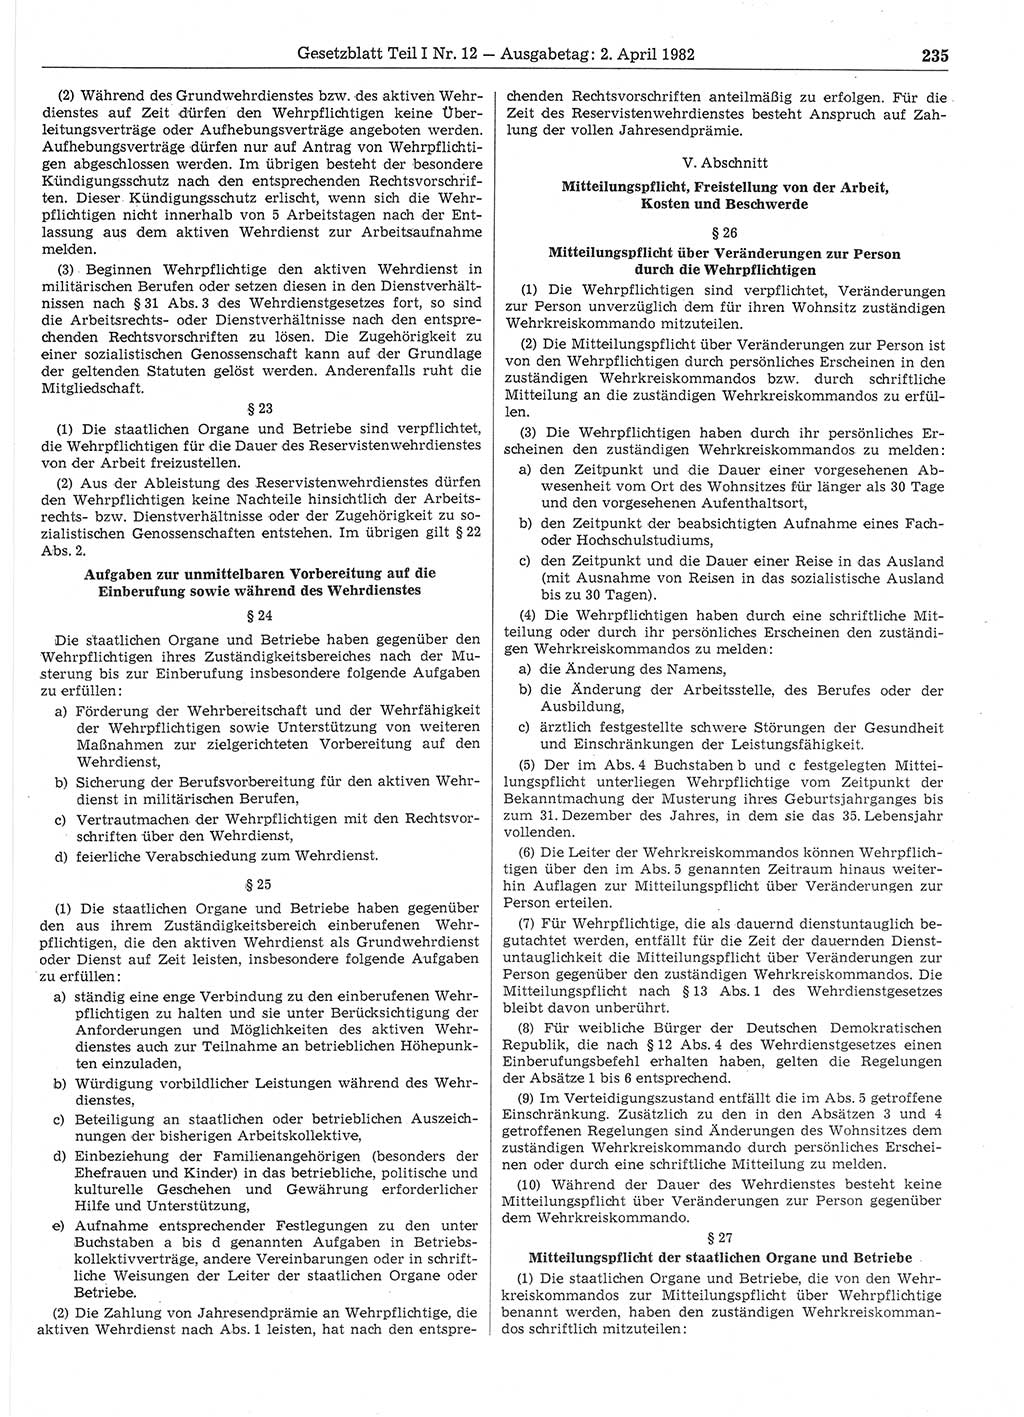 Gesetzblatt (GBl.) der Deutschen Demokratischen Republik (DDR) Teil Ⅰ 1982, Seite 235 (GBl. DDR Ⅰ 1982, S. 235)